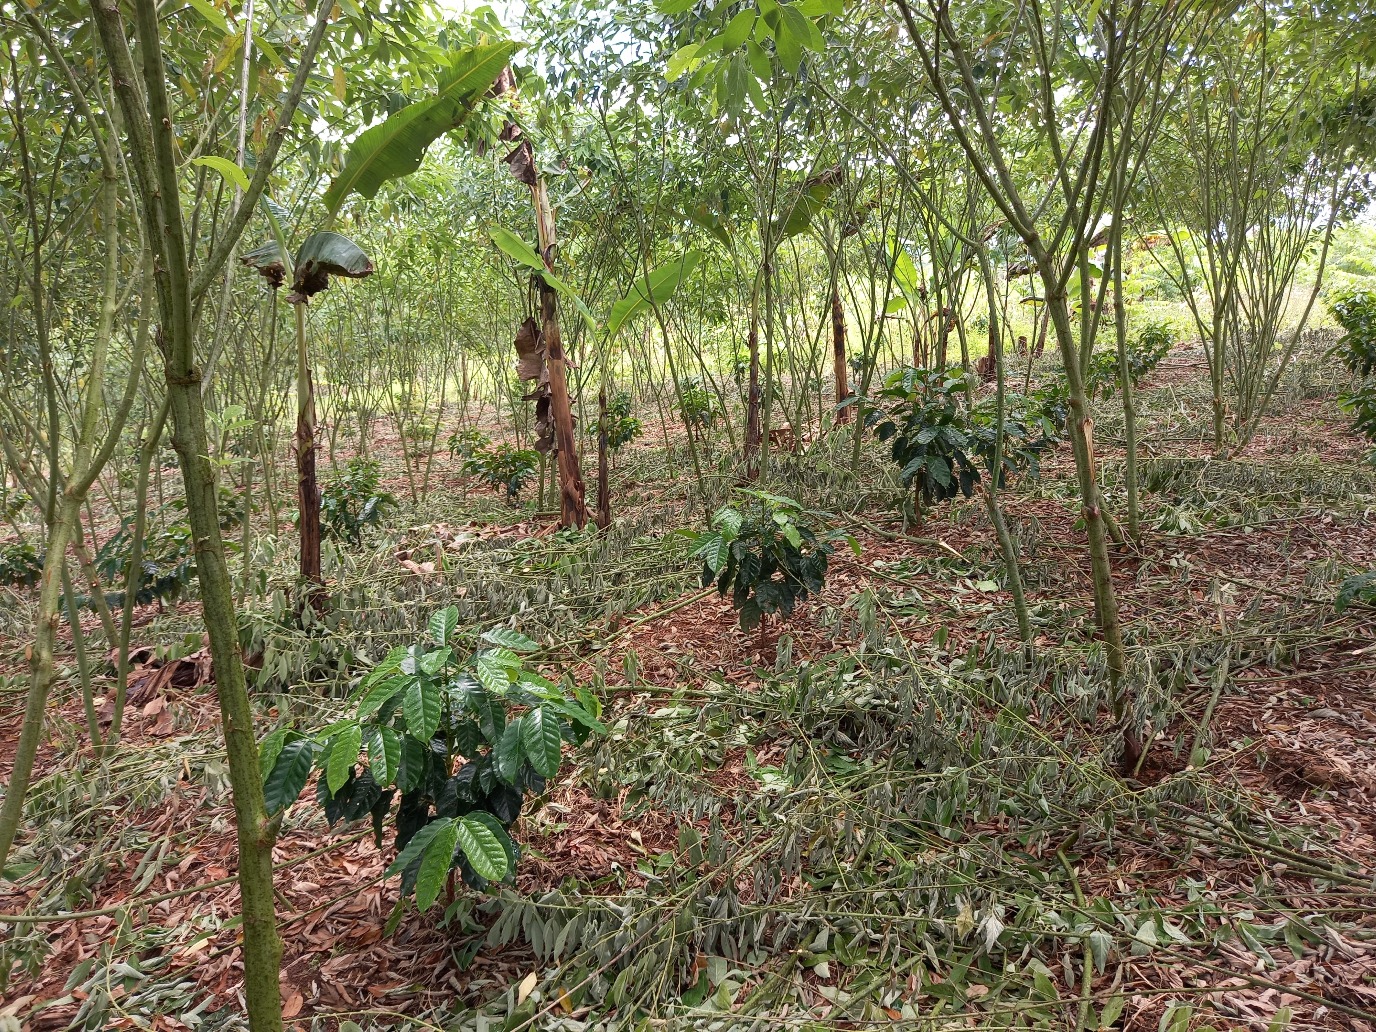 Koffieplantage in Meta, Columbia. De koffieplanten groeien onder bomen die ze beschermen tegen de hitte.